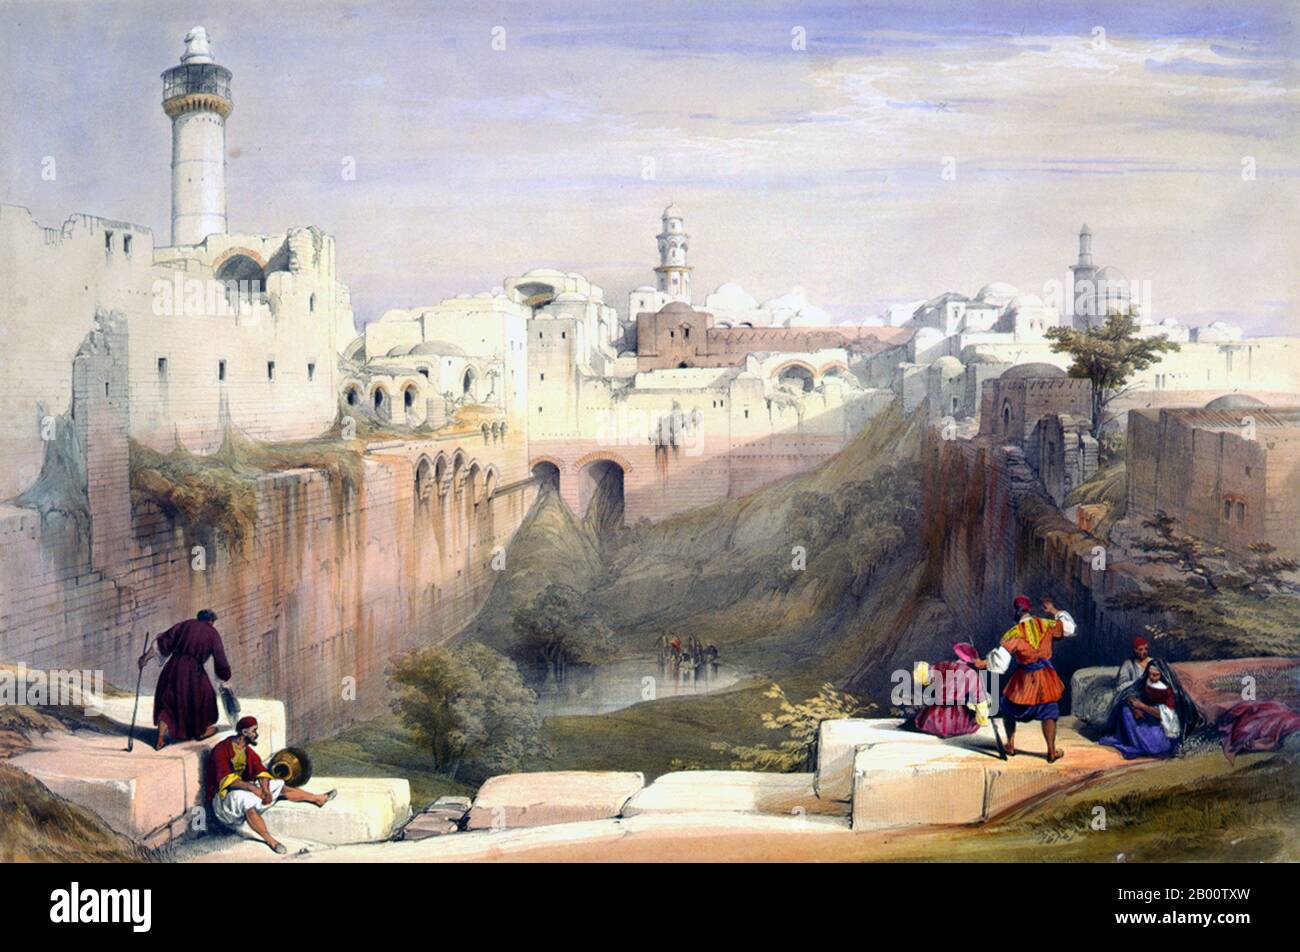 Palestina/Israele: "Il Pool di Bethesda, Gerusalemme". Litografia a colori di David Roberts (1796-1864), c.. David Roberts RA (1864 – 1796 – 1840) è stato un . È particolarmente conosciuto per una serie prolifica di stampe dettagliate dell'Egitto e del Vicino Oriente che ha prodotto durante gli anni '40 del 1840 da schizzi che ha fatto durante i lunghi tour della regione (1838–1840). Questa opera, e i suoi grandi dipinti ad olio di soggetti simili, lo hanno reso un importante pittore orientalista. Fu eletto Accademico reale nel 1841. Foto Stock